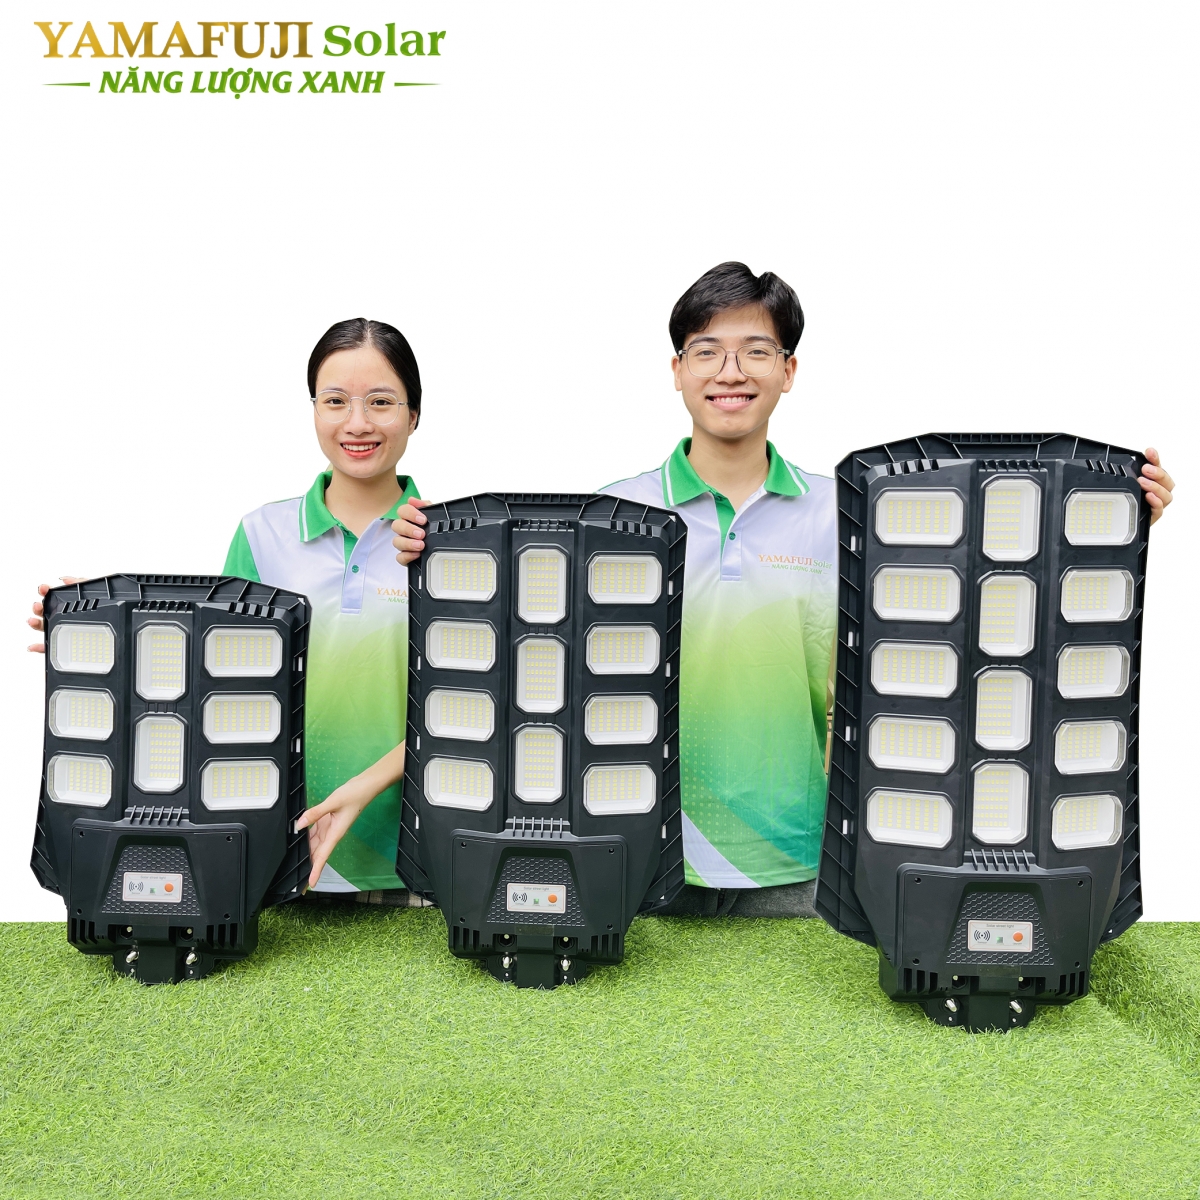 Đèn năng lượng mặt trời Yamafuji Solar ISGL08A-400W cao cấp